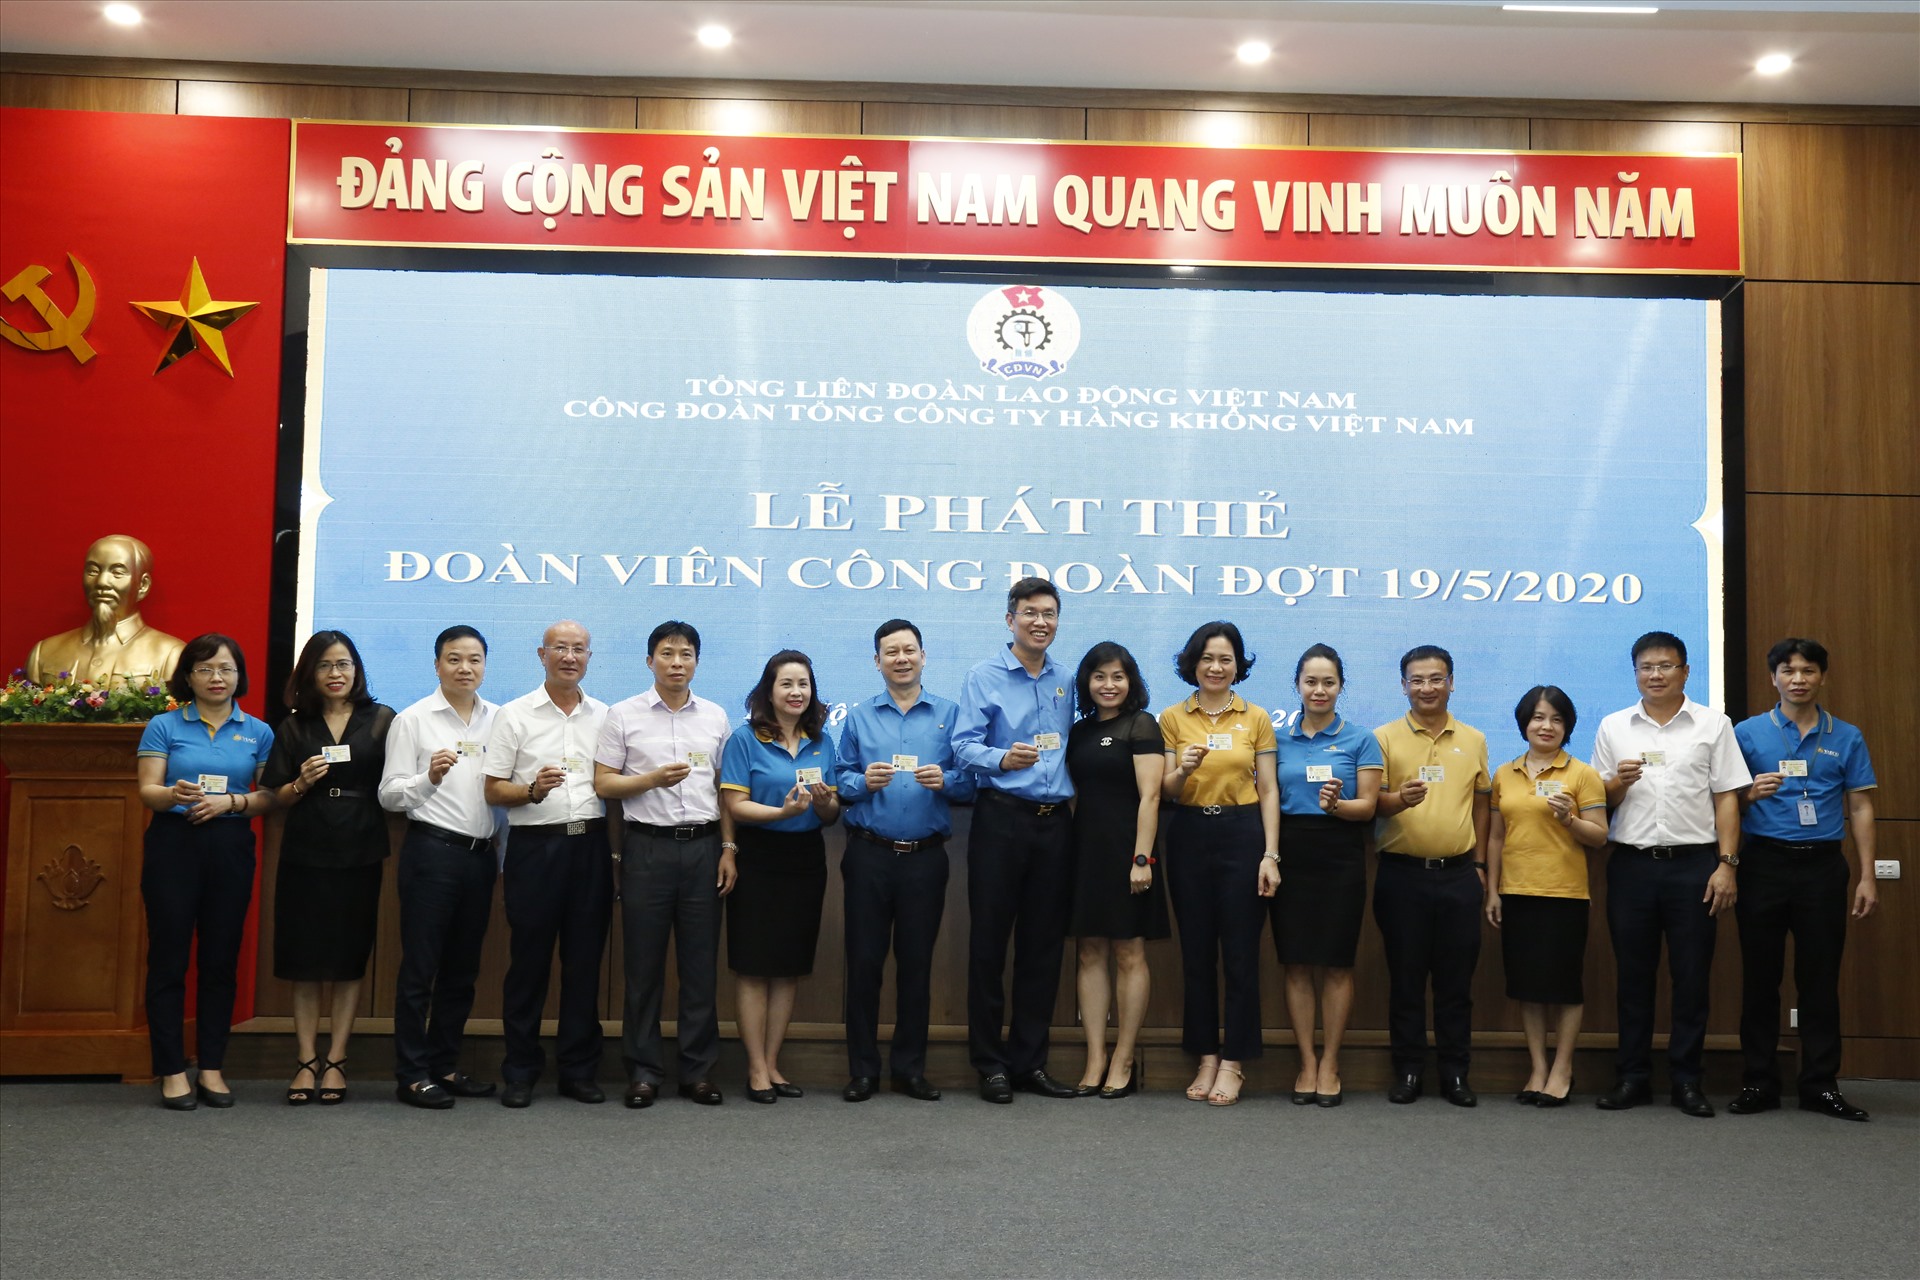 Đại diện các CĐCTCS, CĐCS nhận thẻ đoàn viên công đoàn nhân dịp Tháng Công nhân năm 2020. Ảnh: Quang Minh